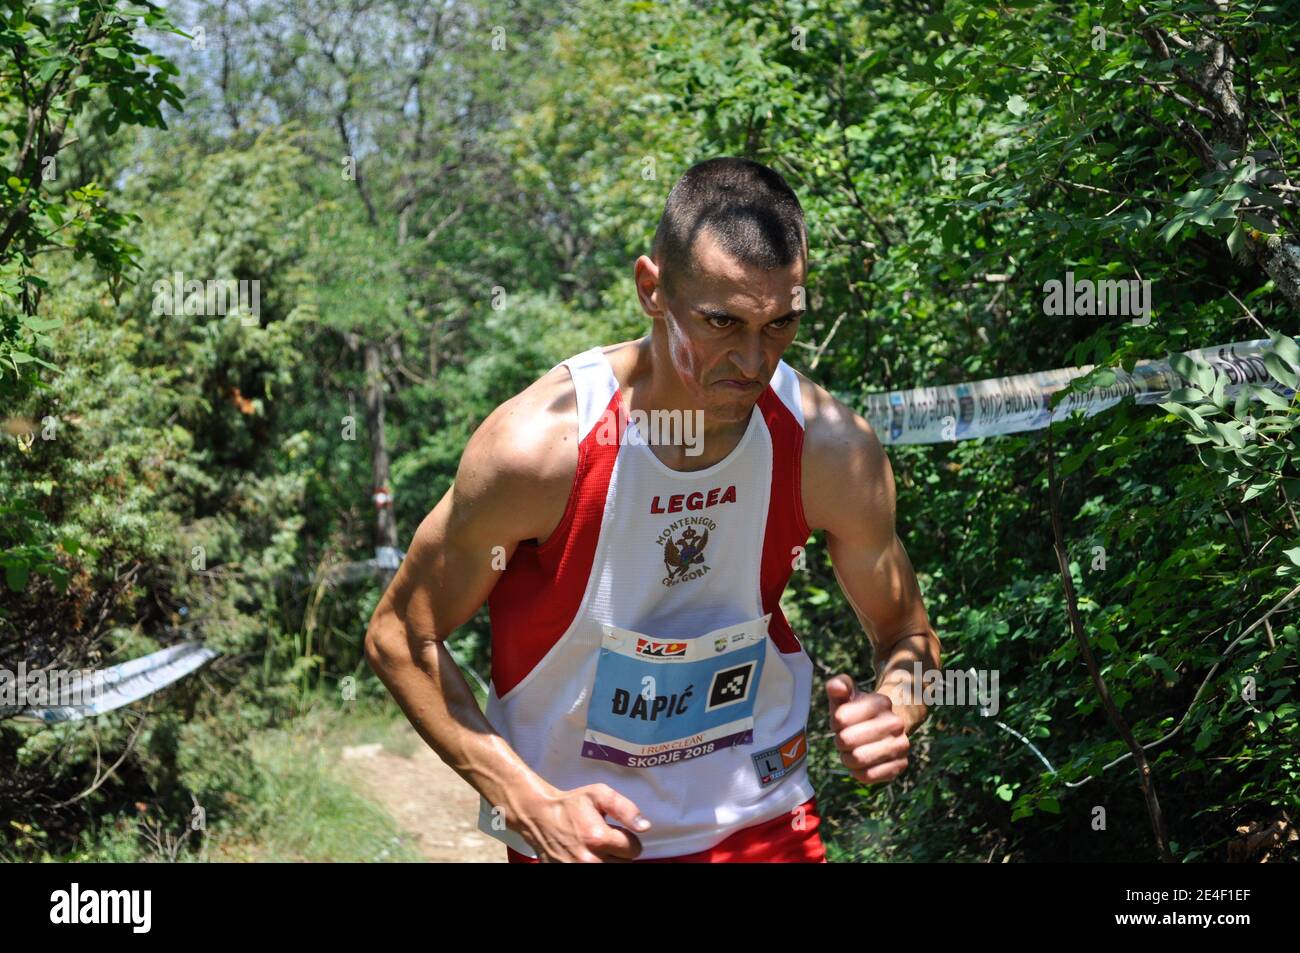 Skopje, Macedonia, luglio 01 2018. 17° Campionato europeo di corsa in montagna - Skopje 2018. I concorrenti corrono lungo le piste del Monte Vodno. Foto Stock